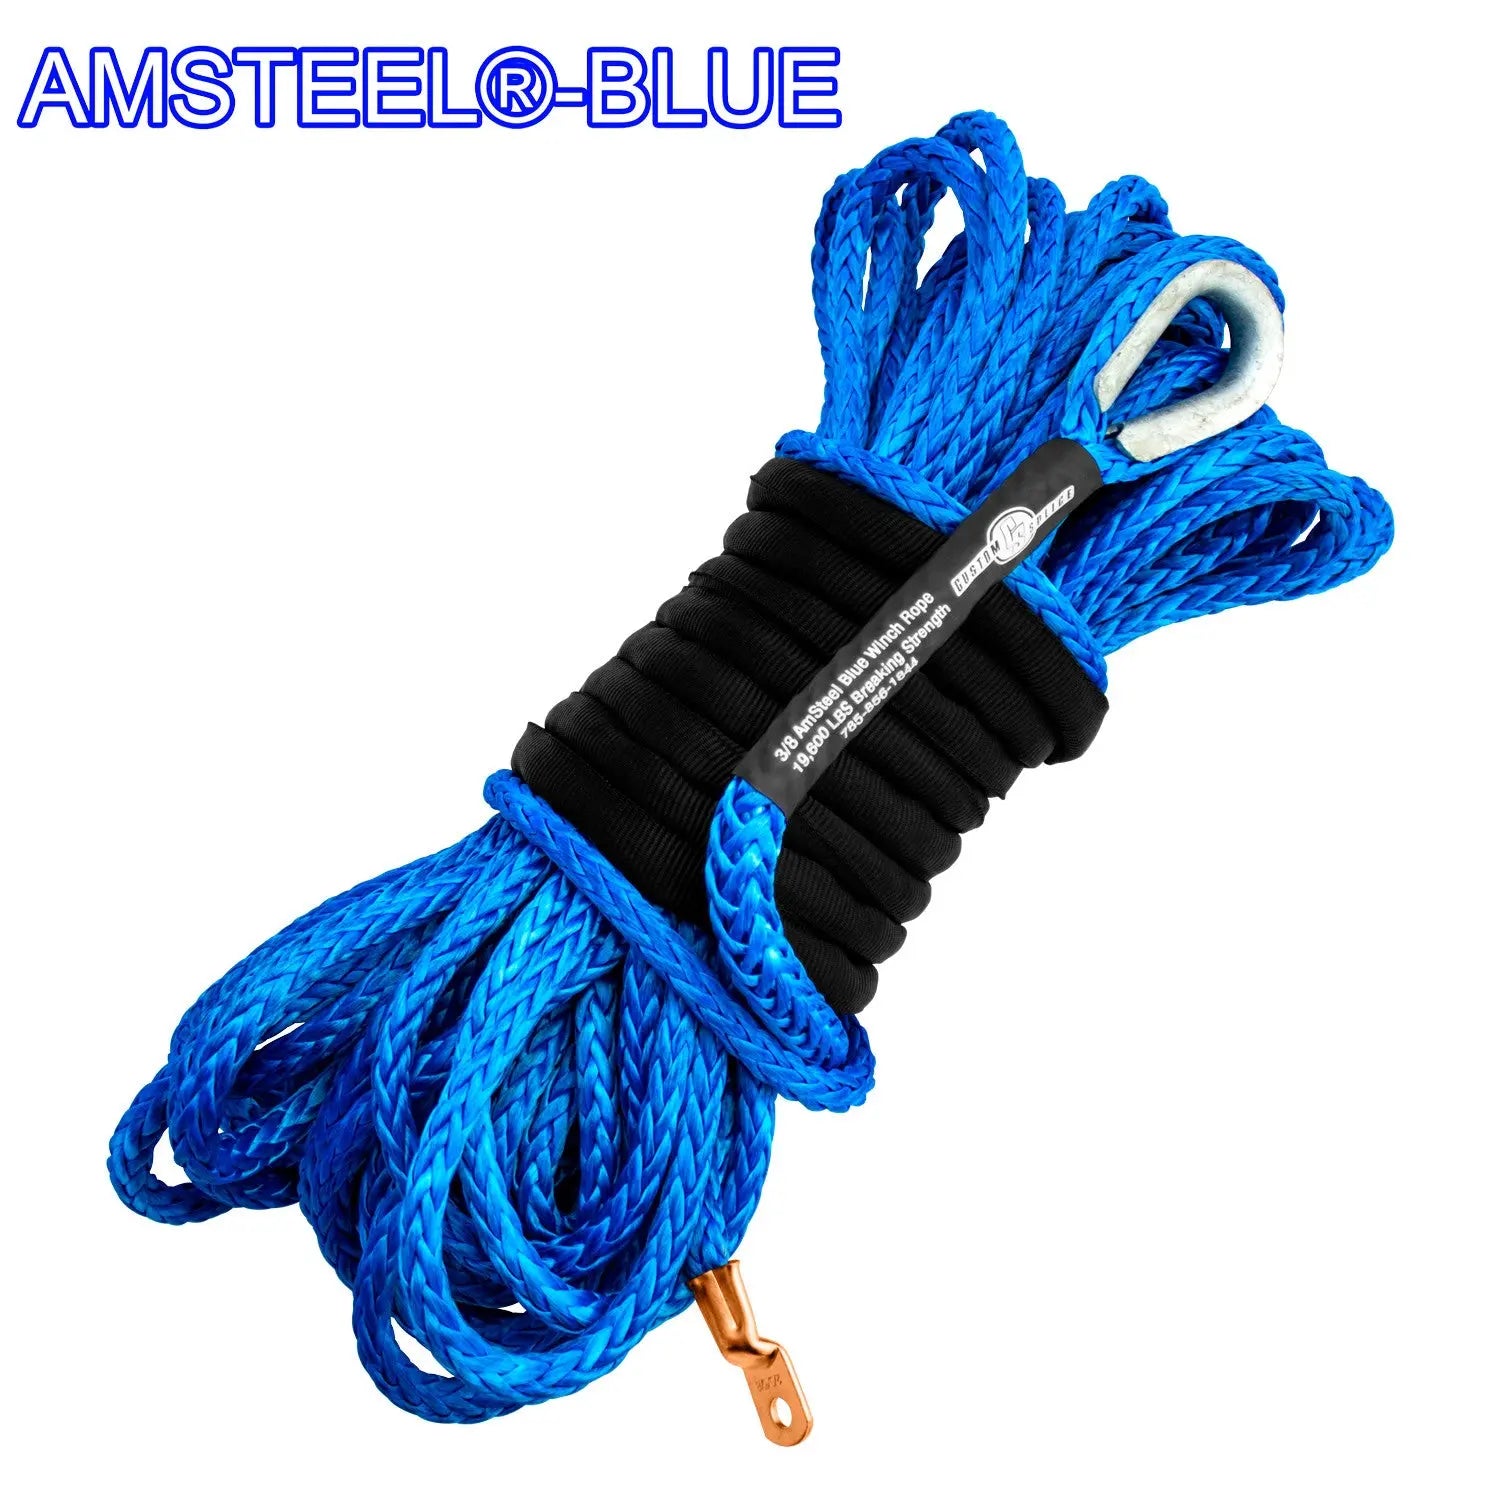 https://customsplice.com/cdn/shop/files/3-8-Main-Line-Winch-Rope---AmSteel-Blue-Custom-Splice---AmSteel-Blue-1694568279310.jpg?v=1694568280&width=2400